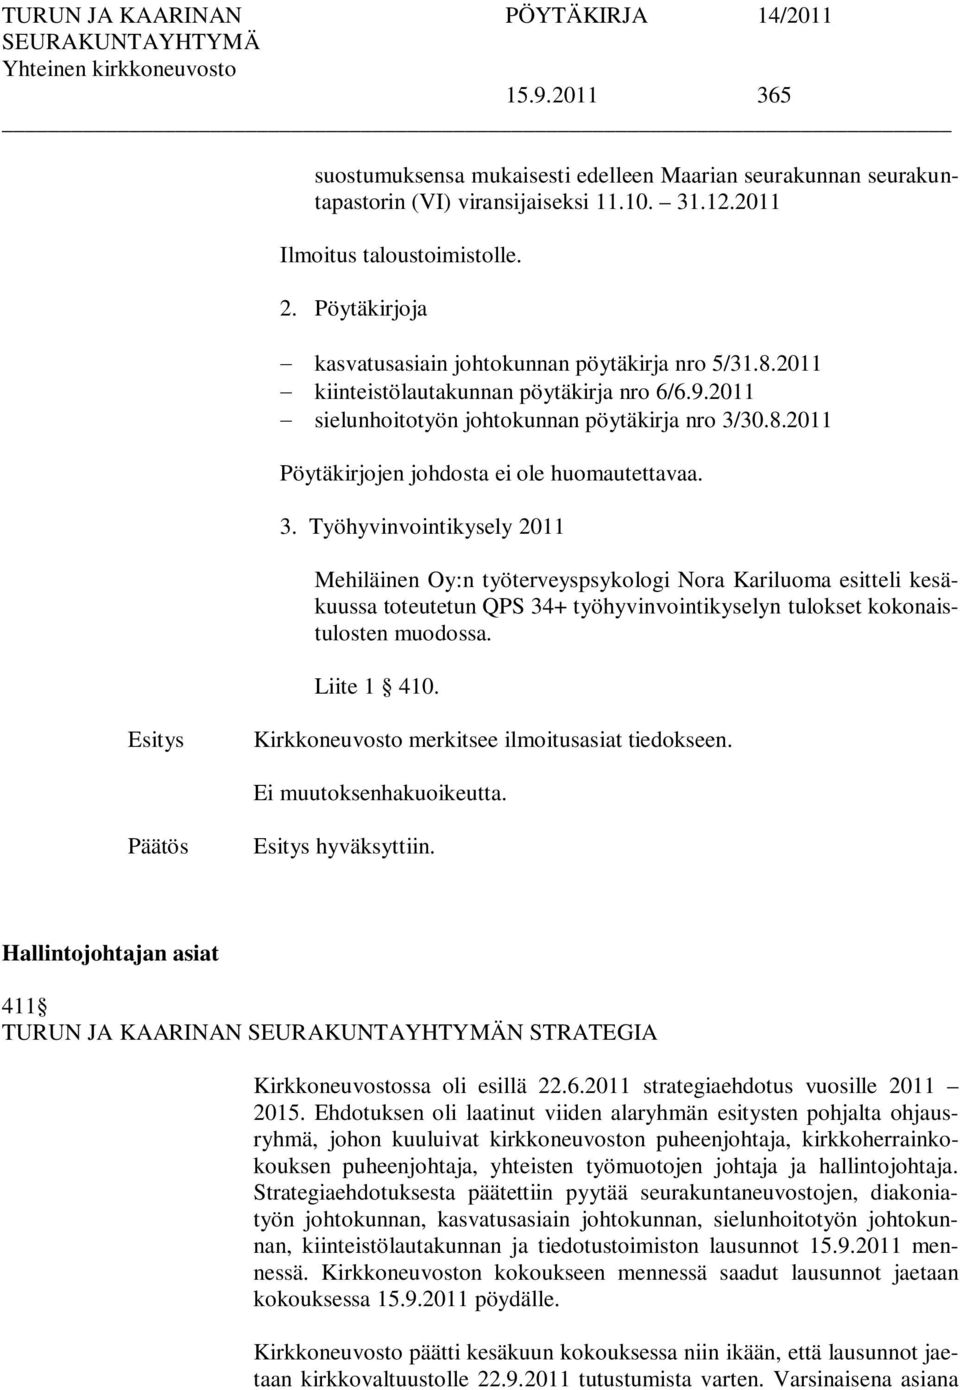 3. Työhyvinvointikysely 2011 Mehiläinen Oy:n työterveyspsykologi Nora Kariluoma esitteli kesäkuussa toteutetun QPS 34+ työhyvinvointikyselyn tulokset kokonaistulosten muodossa. Liite 1 410.